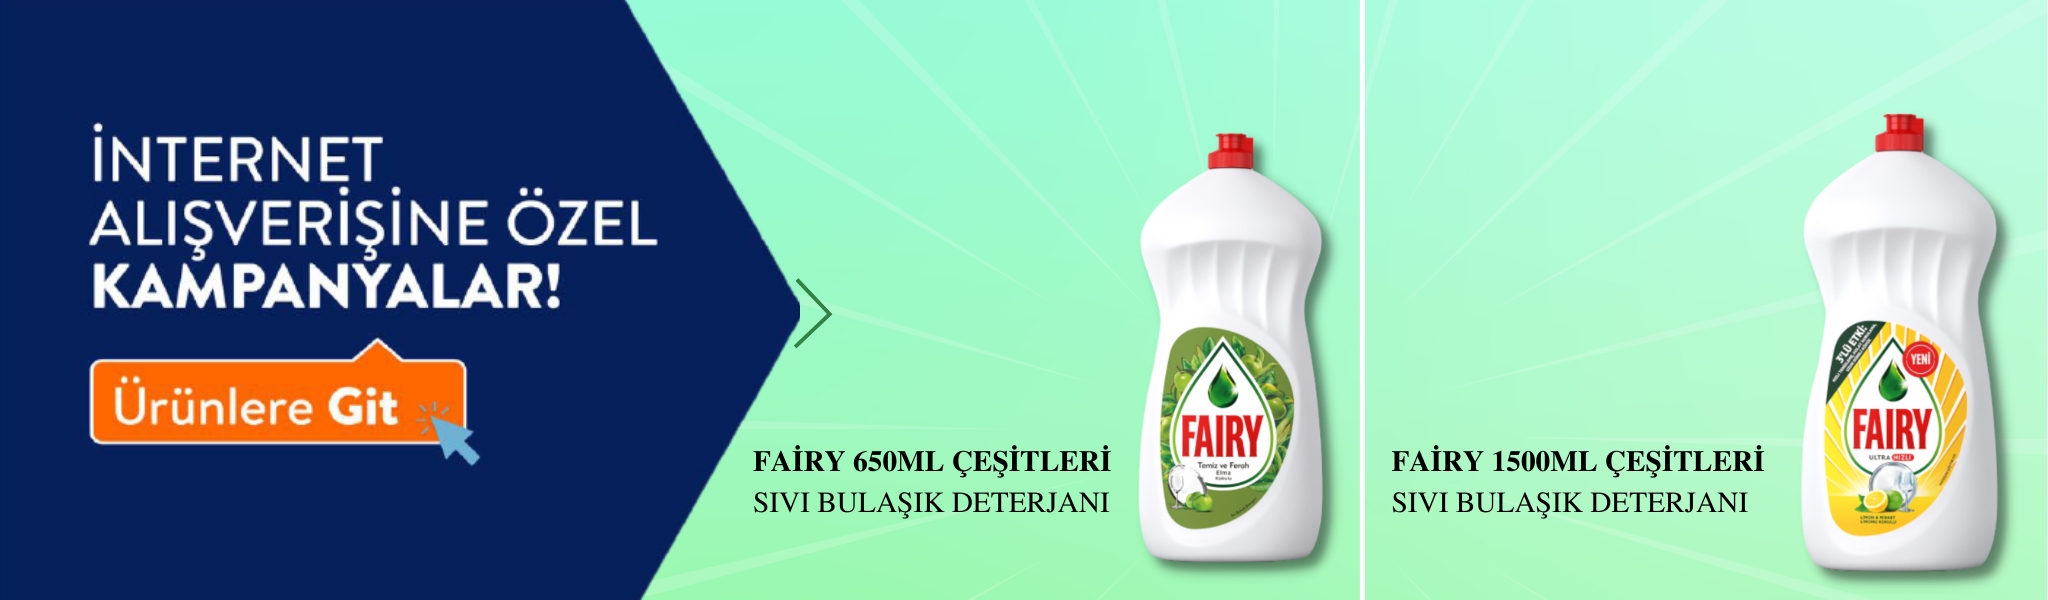 Fairy Sıvı bulaşık deterjanı